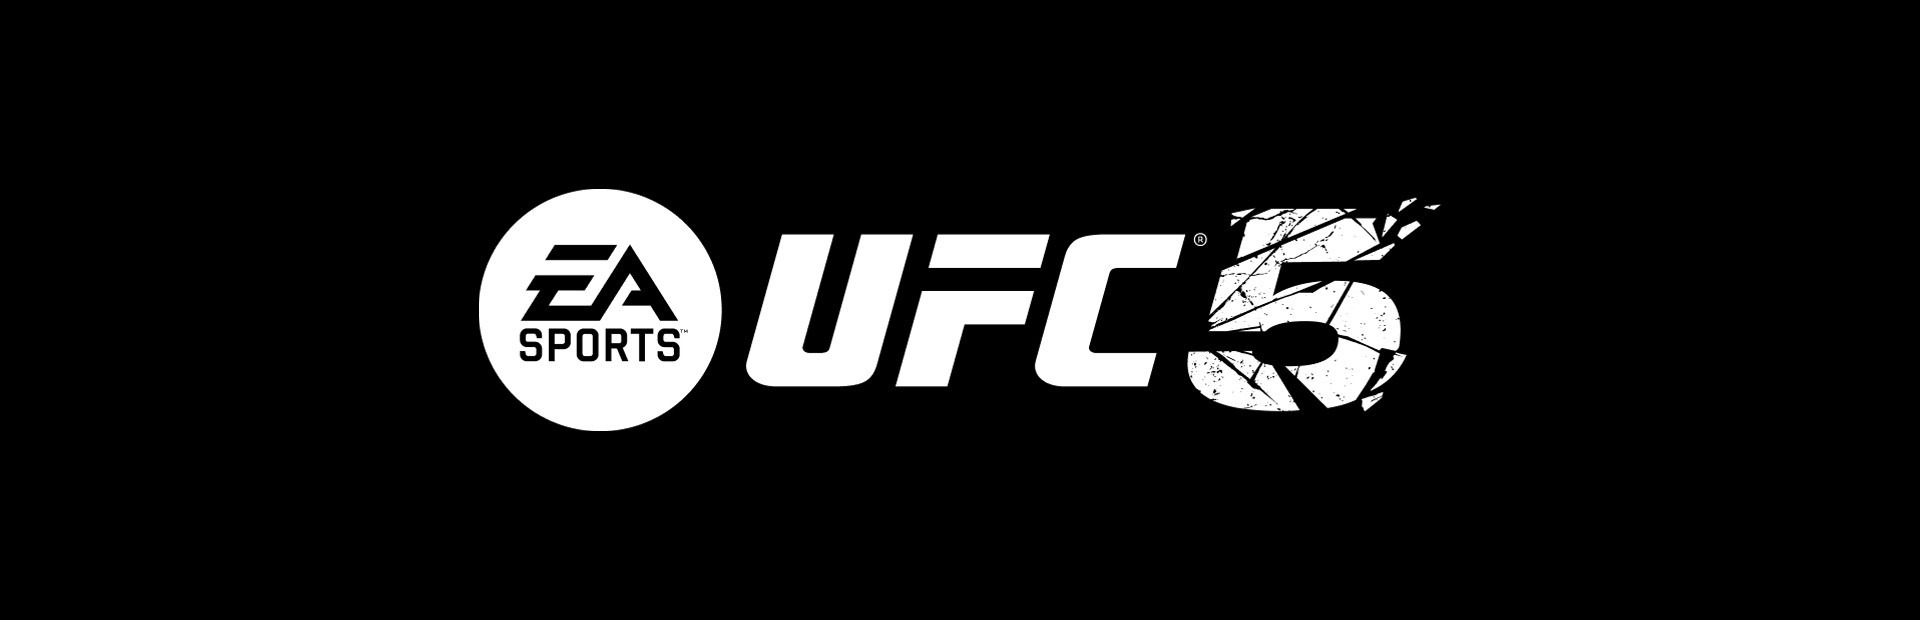 EA Sports UFC 5 se muestra en detalle en nuevo tráiler [VIDEO], Videojuegos, EA Sports UFC 5, Electronic Arts, PS5, Sony, PlayStation, Microsoft, Xbox Series X, DEPOR-PLAY